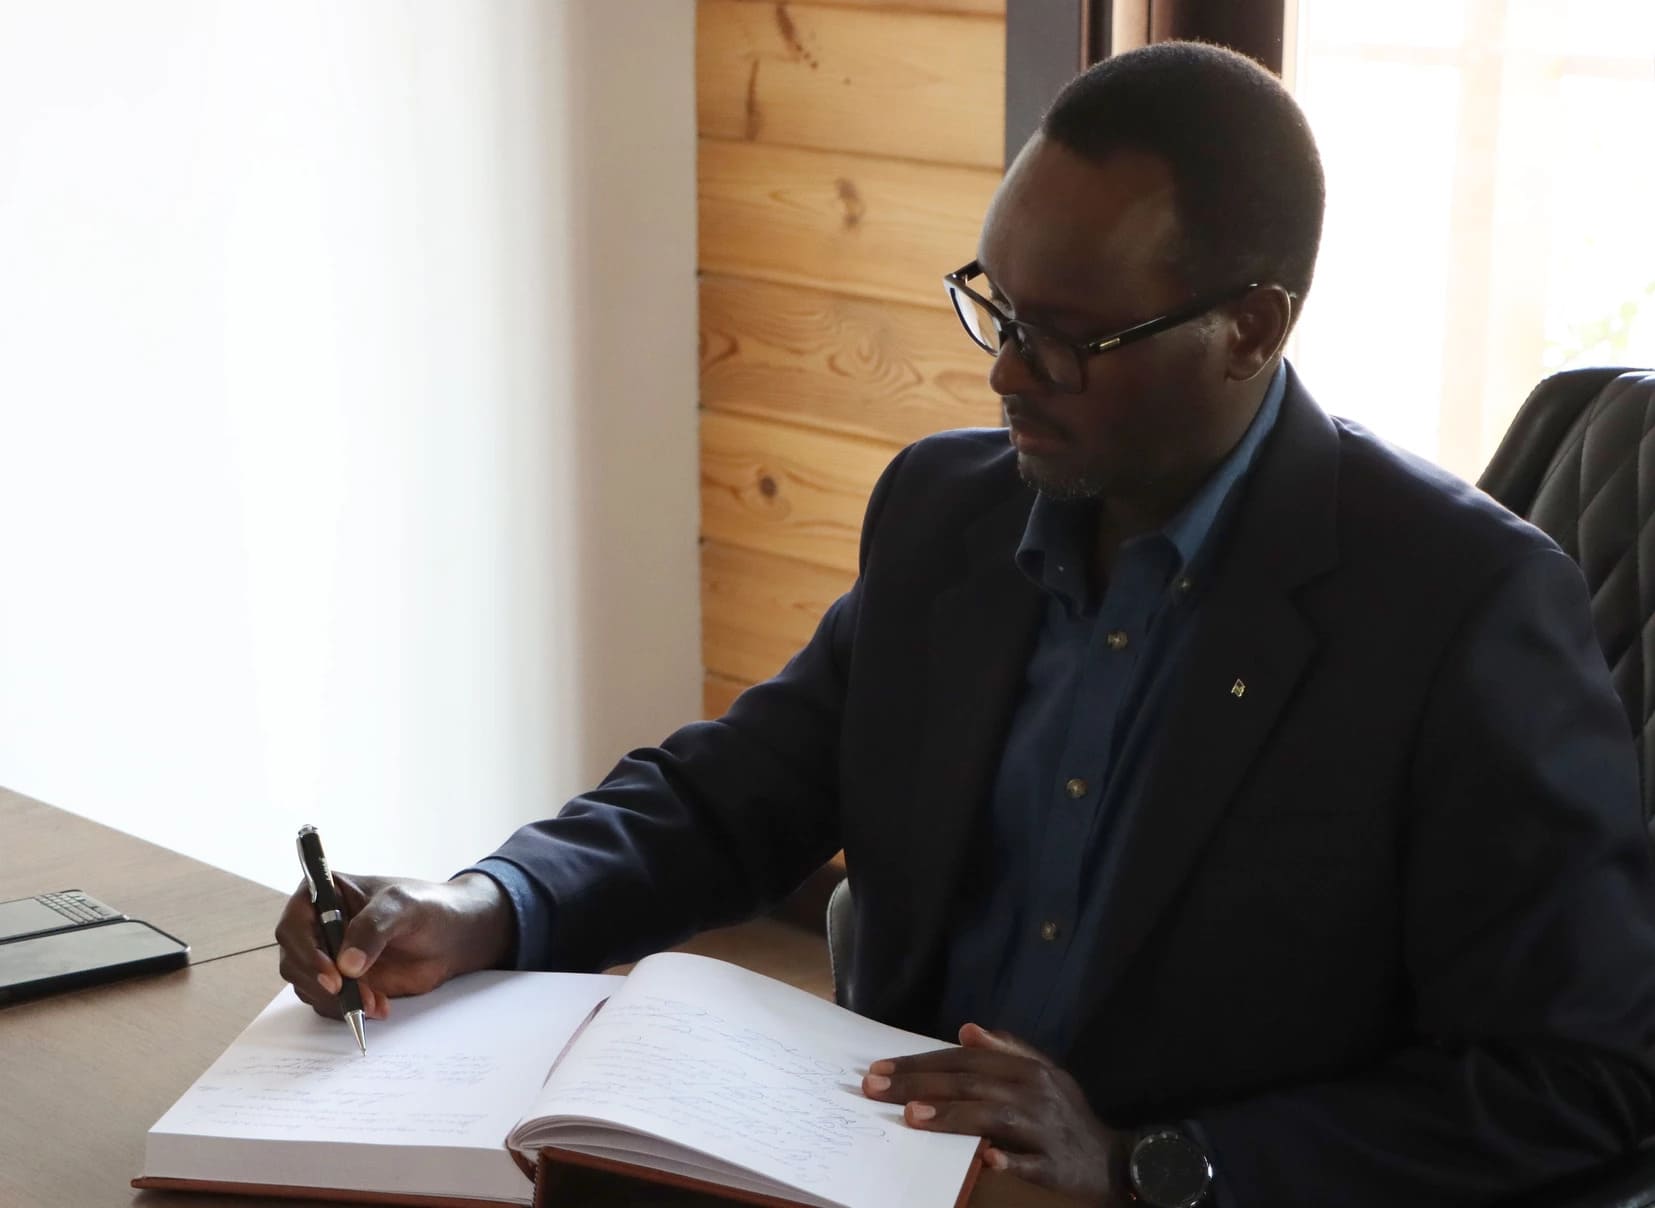 Эммануэль Хатегека, посол Руанды в ОАЭ оставил отзыв в гостевой книге